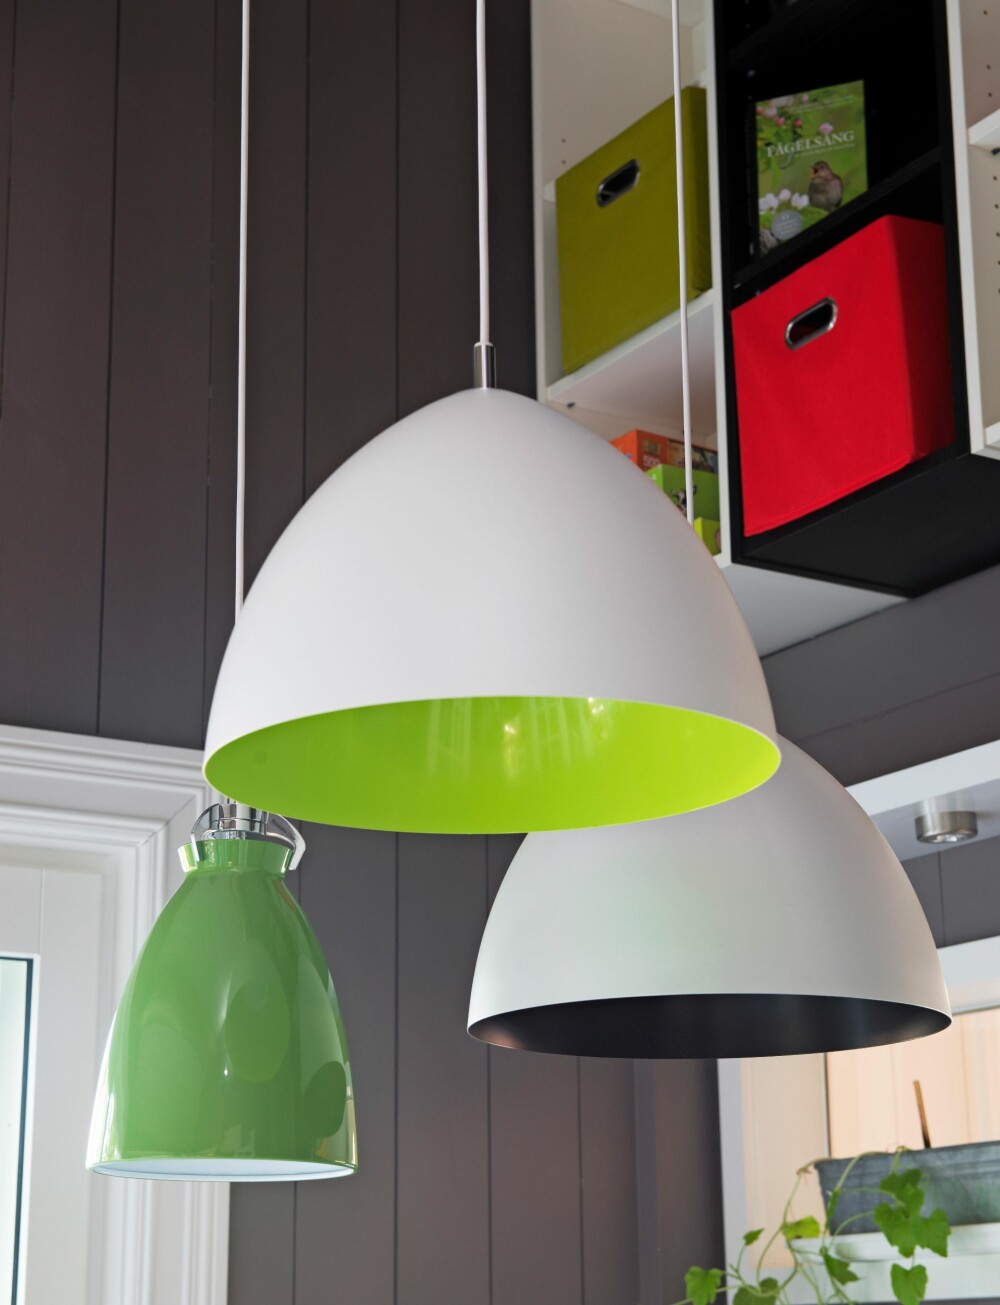 LYSKLYNGE: Et dekorativt, hengende stilleben. Lampene med hvit utside er fra Belid, modell Lizzie. Den grønne Apollolampen er bestilt hos idelight.dk. (FOTO: Espen Grønli)